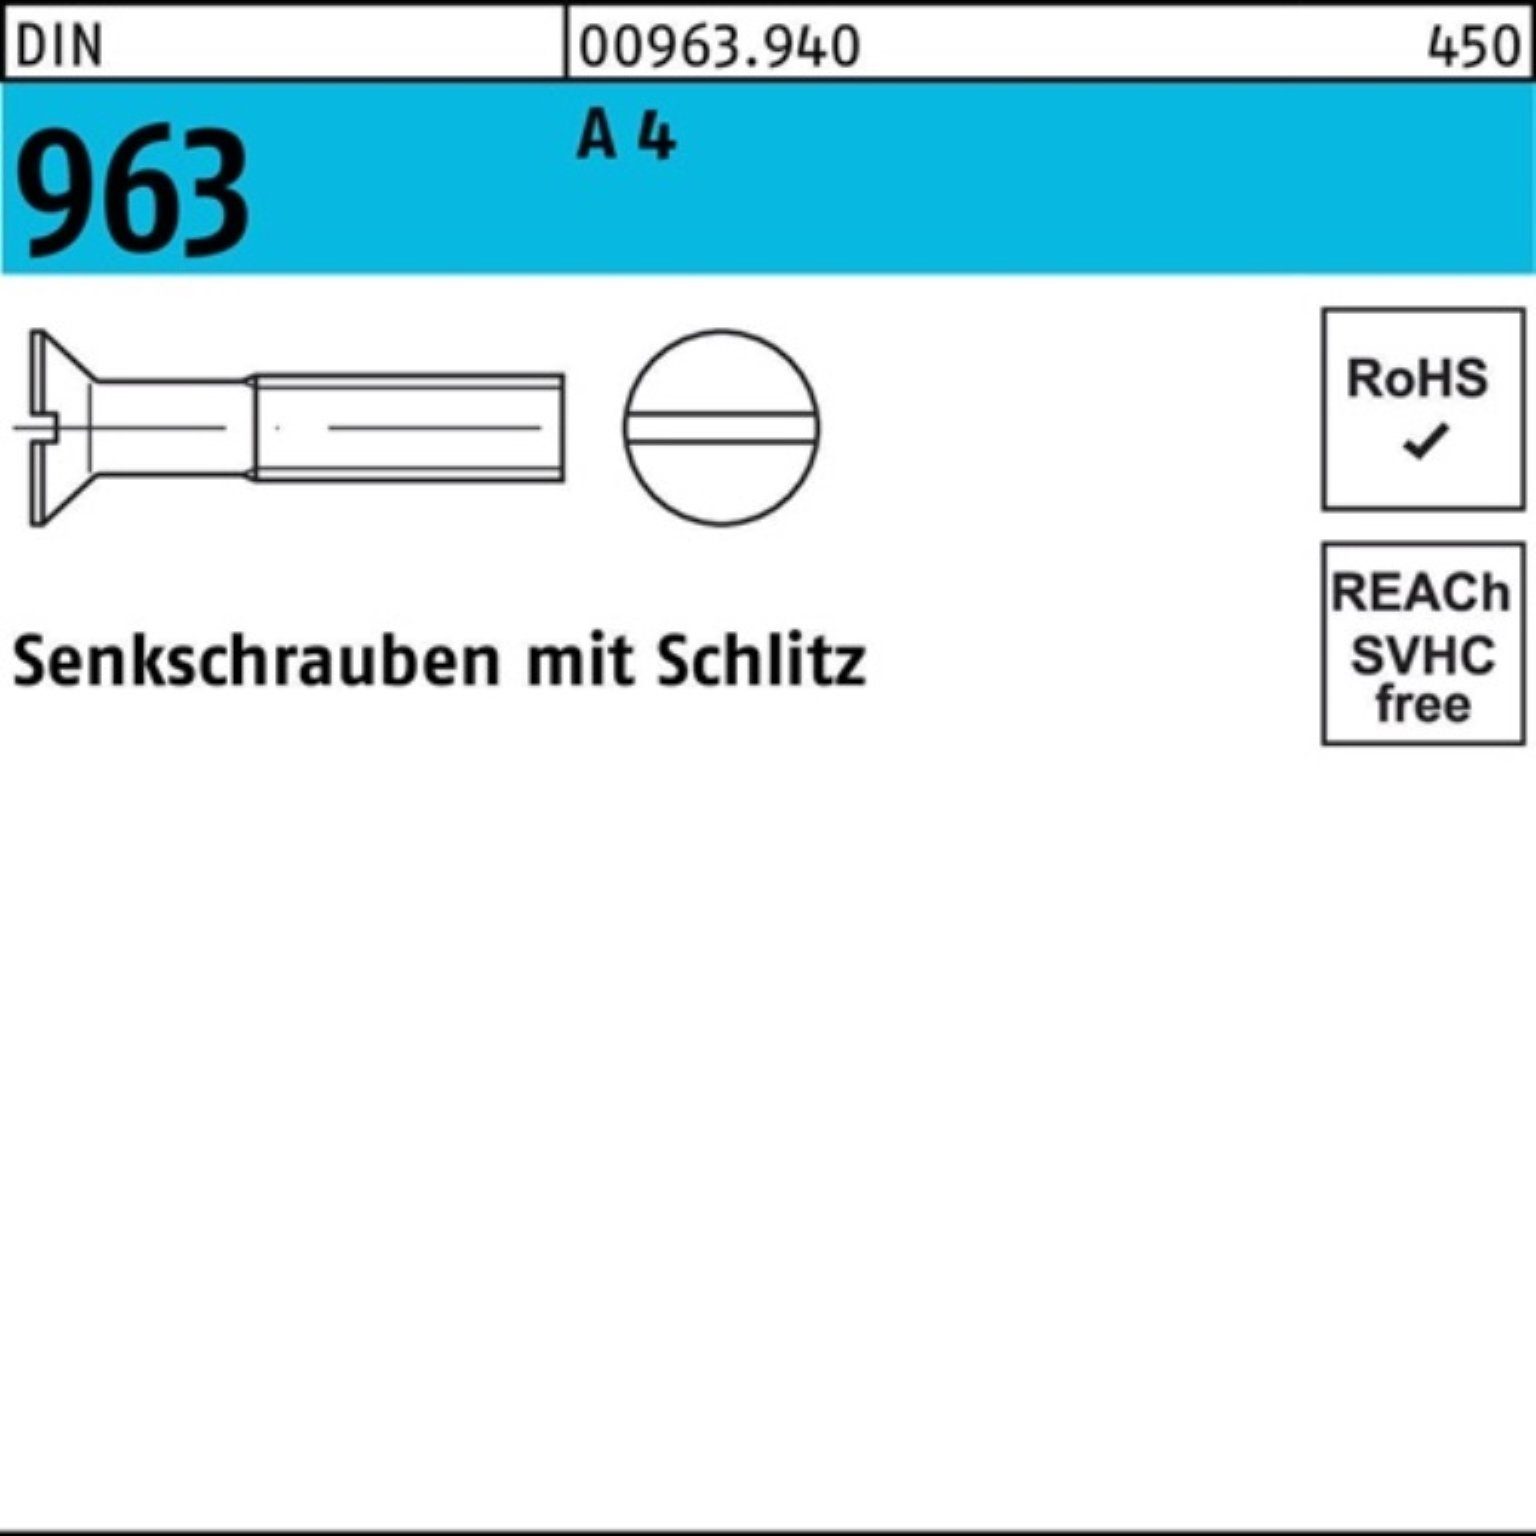 Reyher Senkschraube 4 200 Senkschraube 963 4 M2,5x 963 Pack Stück Schlitz A 200er DIN DIN